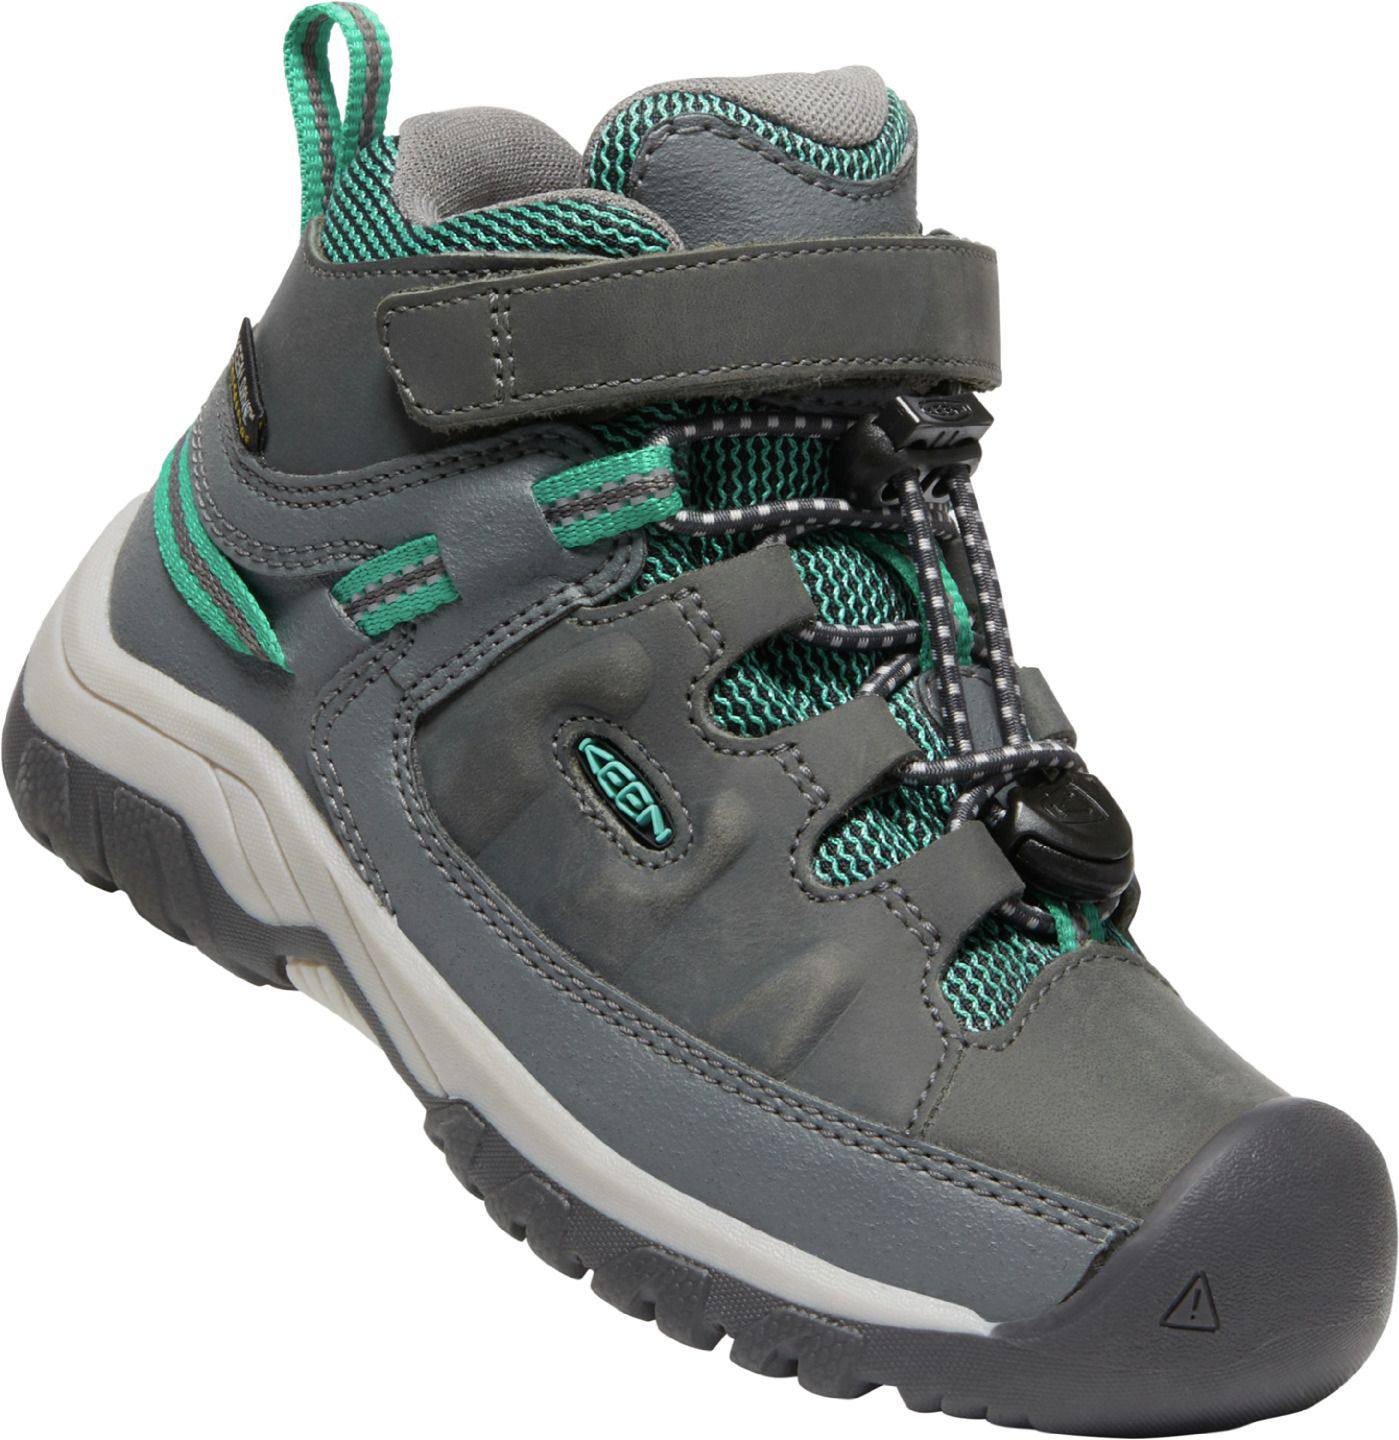 KEEN Targhee Mid Waterproof Hiking Boots with Hook-and-Loop Strap for Kids - Steel Grey/Porcelain - 13 Kids